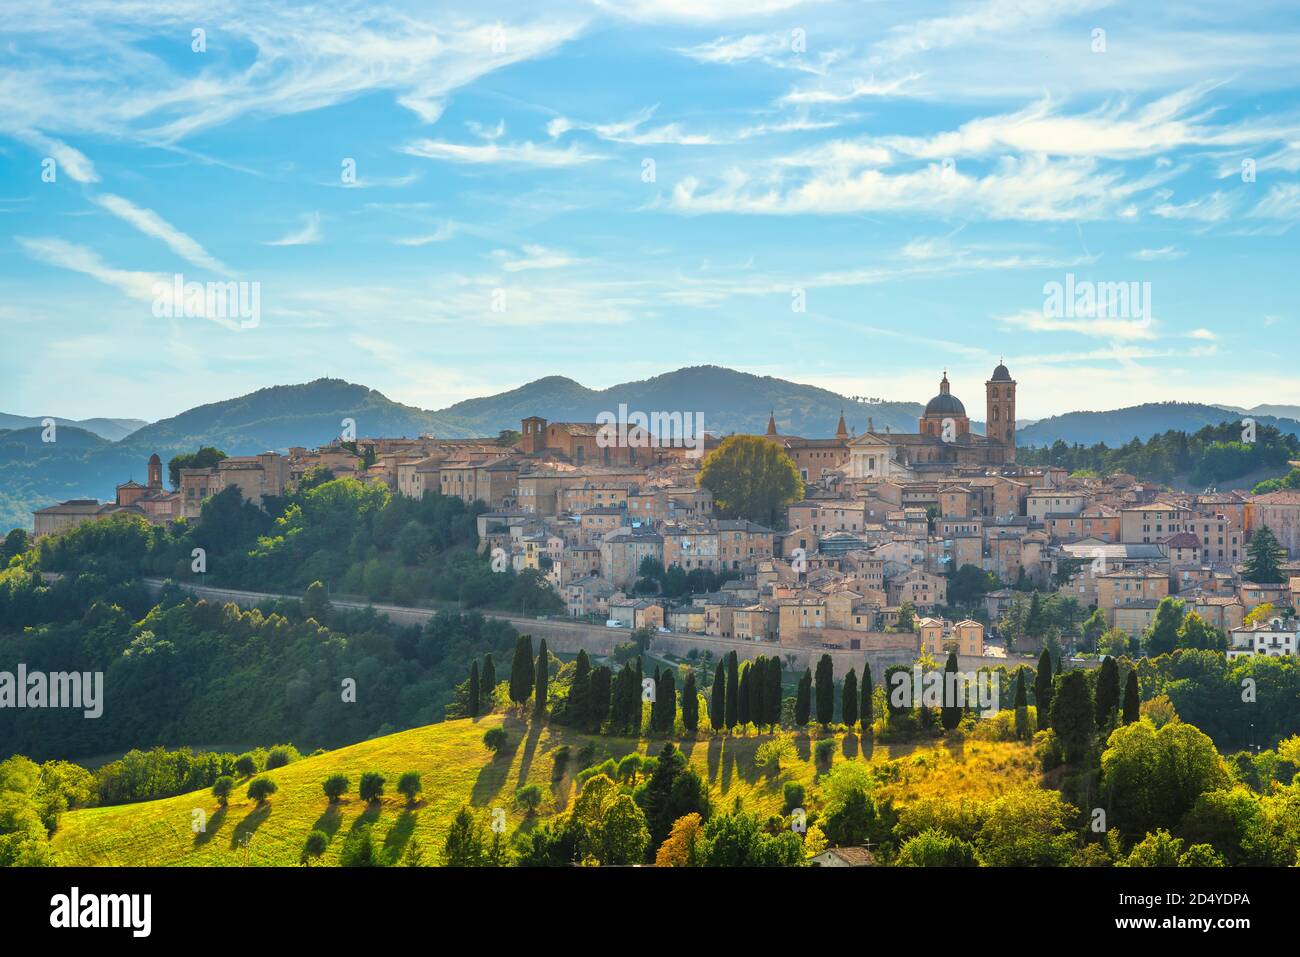 Ville d'Urbino et paysage de campagne. Patrimoine mondial de l'UNESCO. Région des Marches, Italie, Europe. Banque D'Images